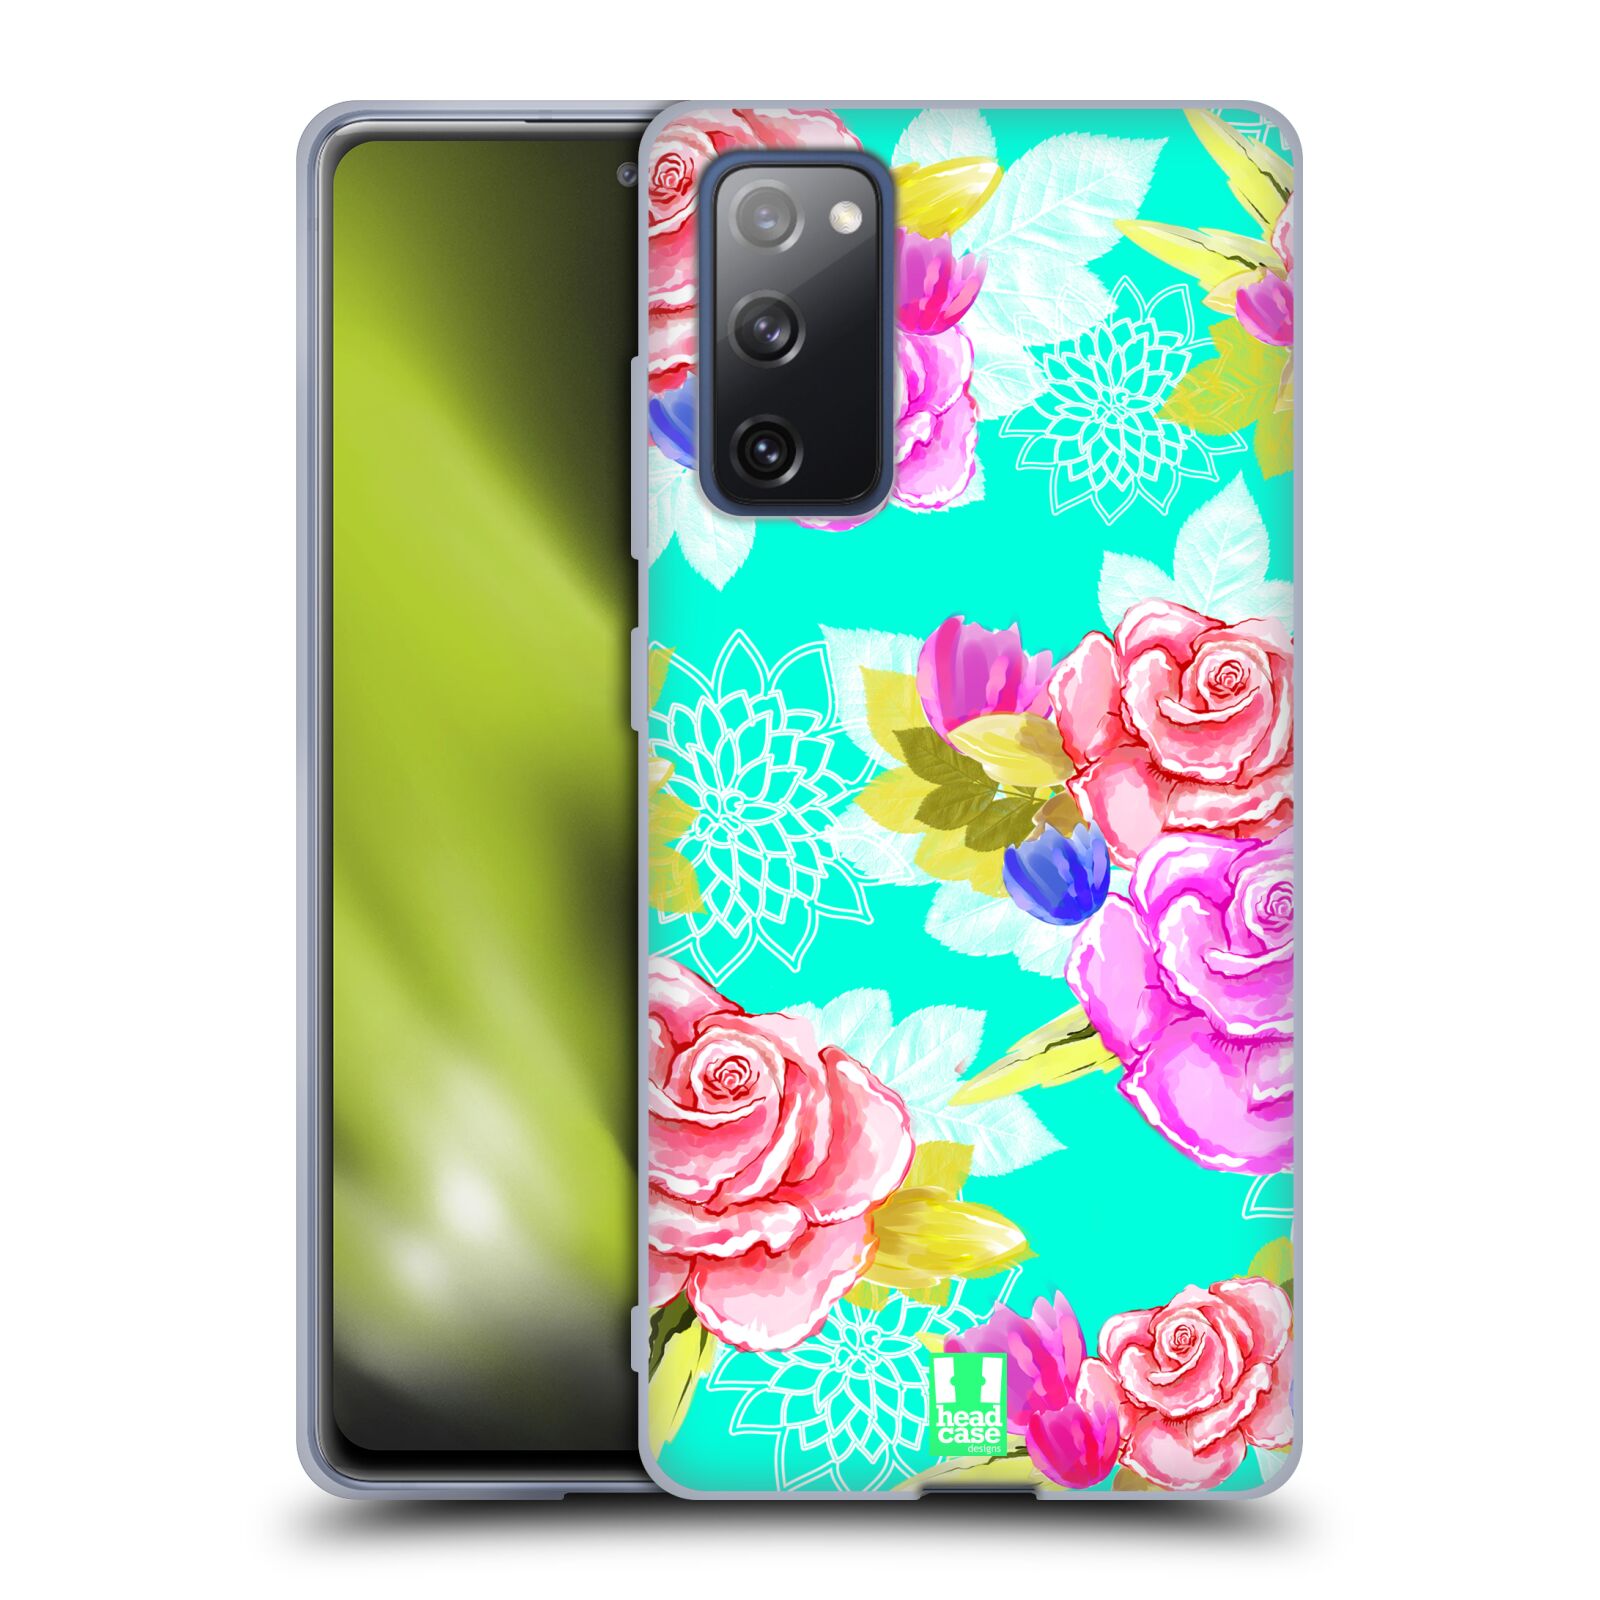 Plastový obal HEAD CASE na mobil Samsung Galaxy S20 FE / S20 FE 5G vzor Malované květiny barevné AQUA MODRÁ